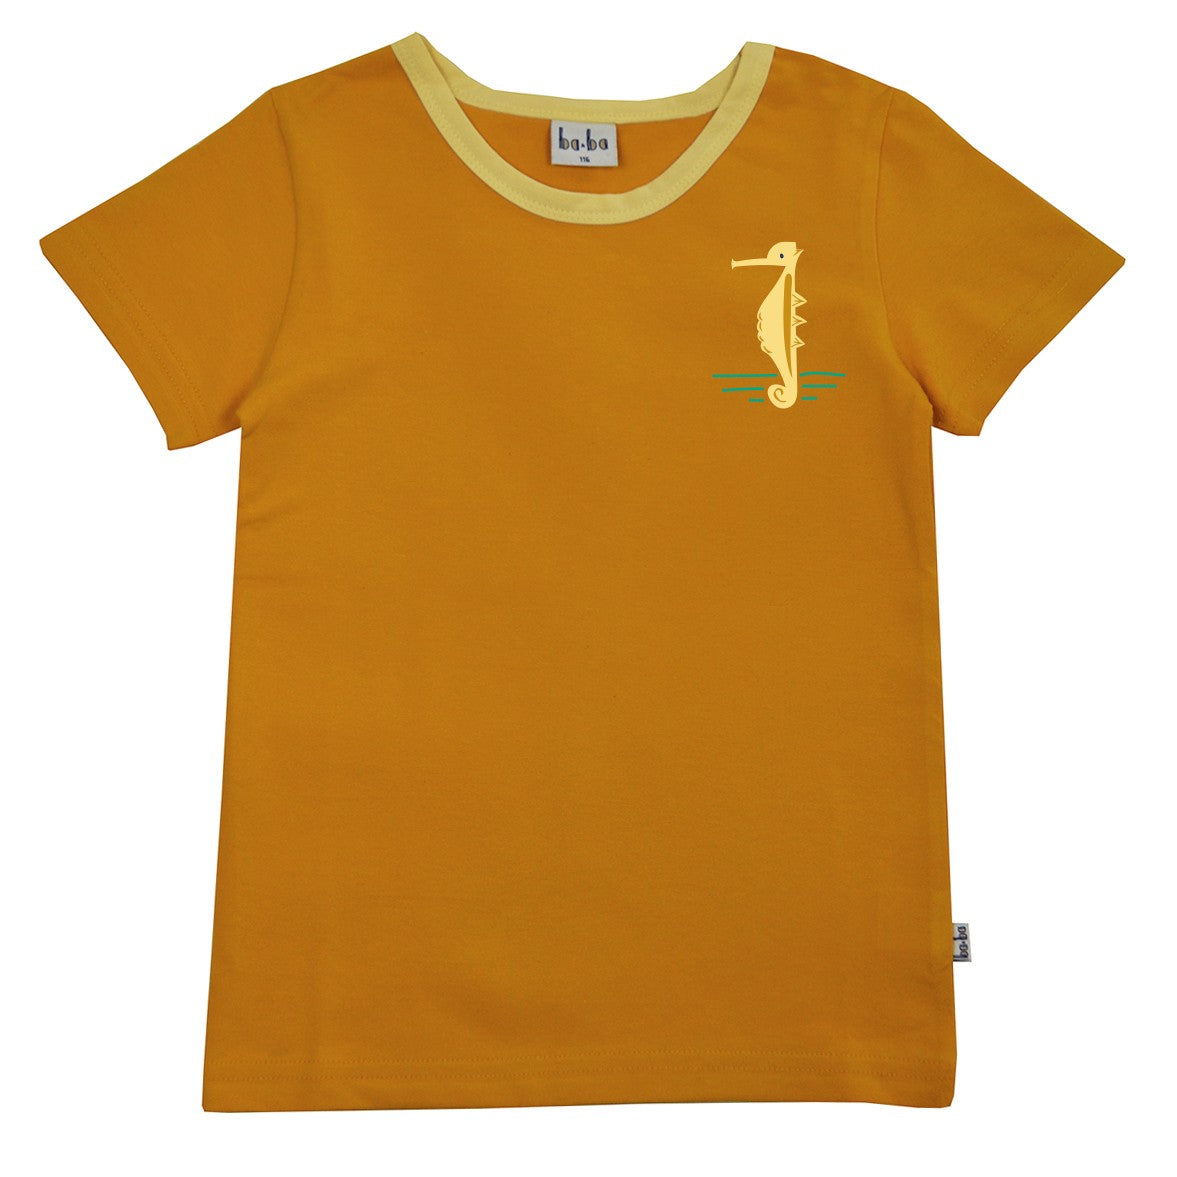 genetisch boksen Of later Baba Kidswear - T-shirt Seahorse Golden Yellow - Zeepaardje Geel -  GOEDvanToen - Eerlijke & biologische kinderkleding en babykleding